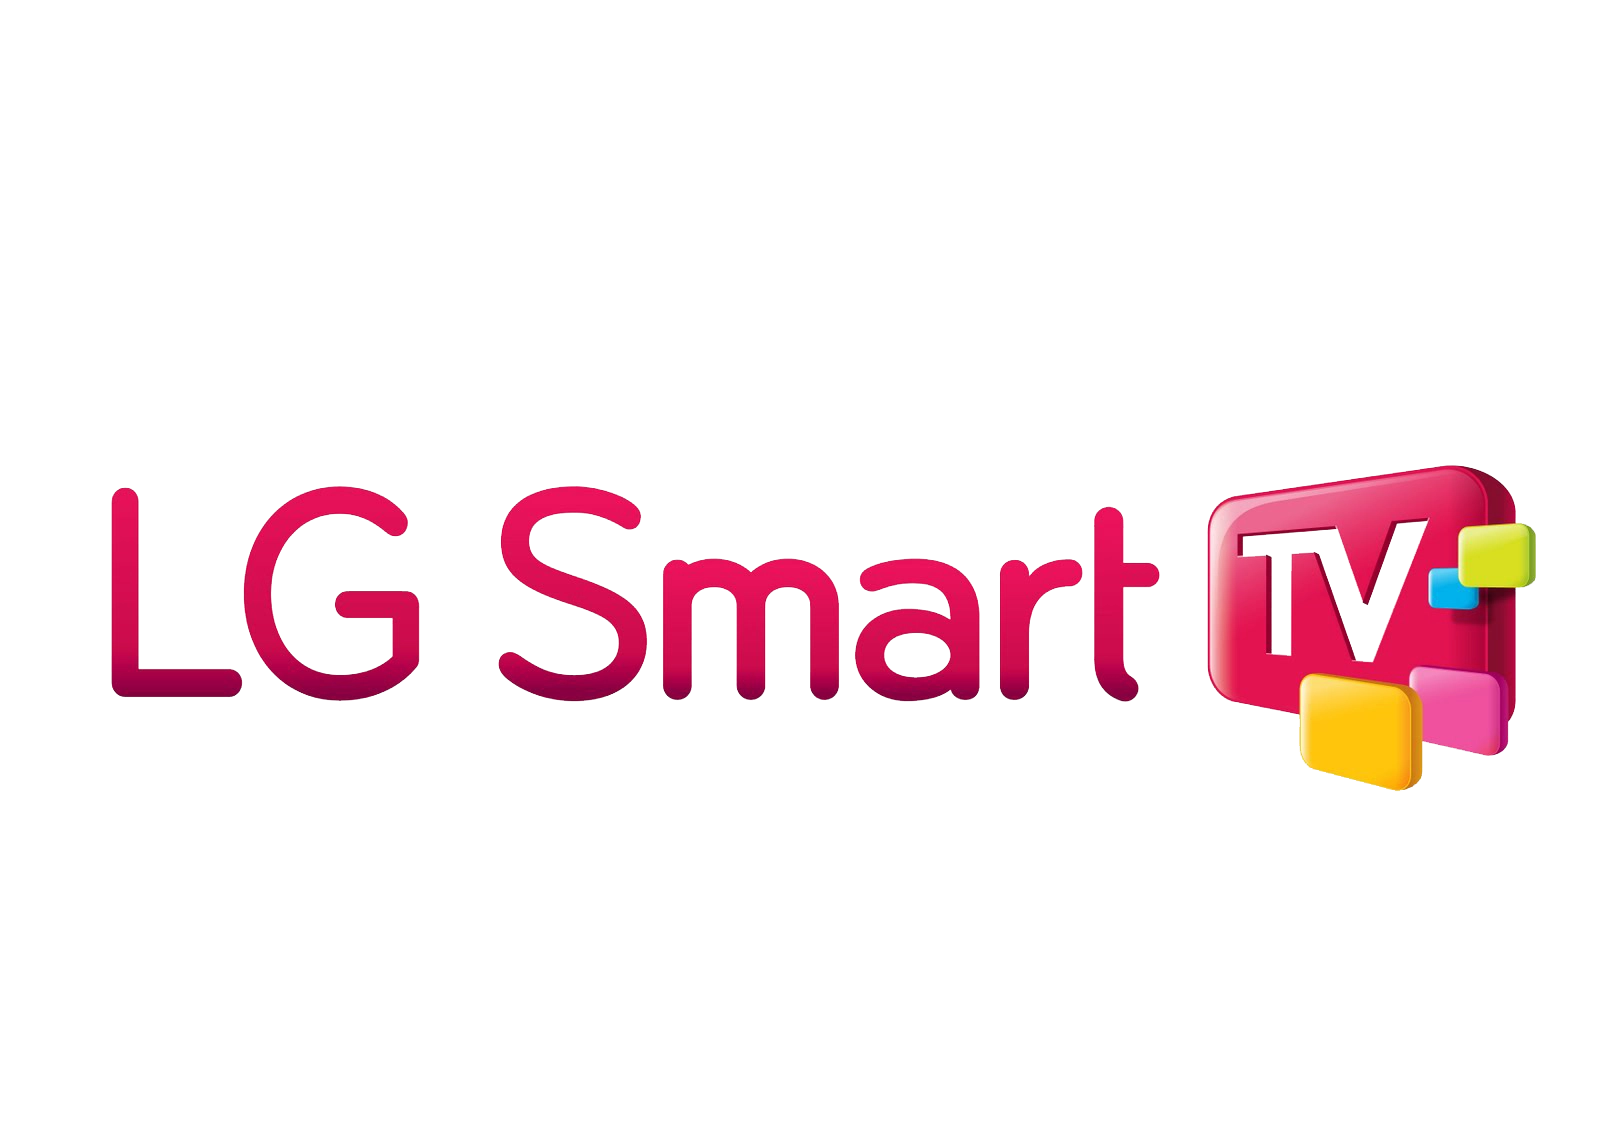 Install Beast IPTV on LG Smart TV